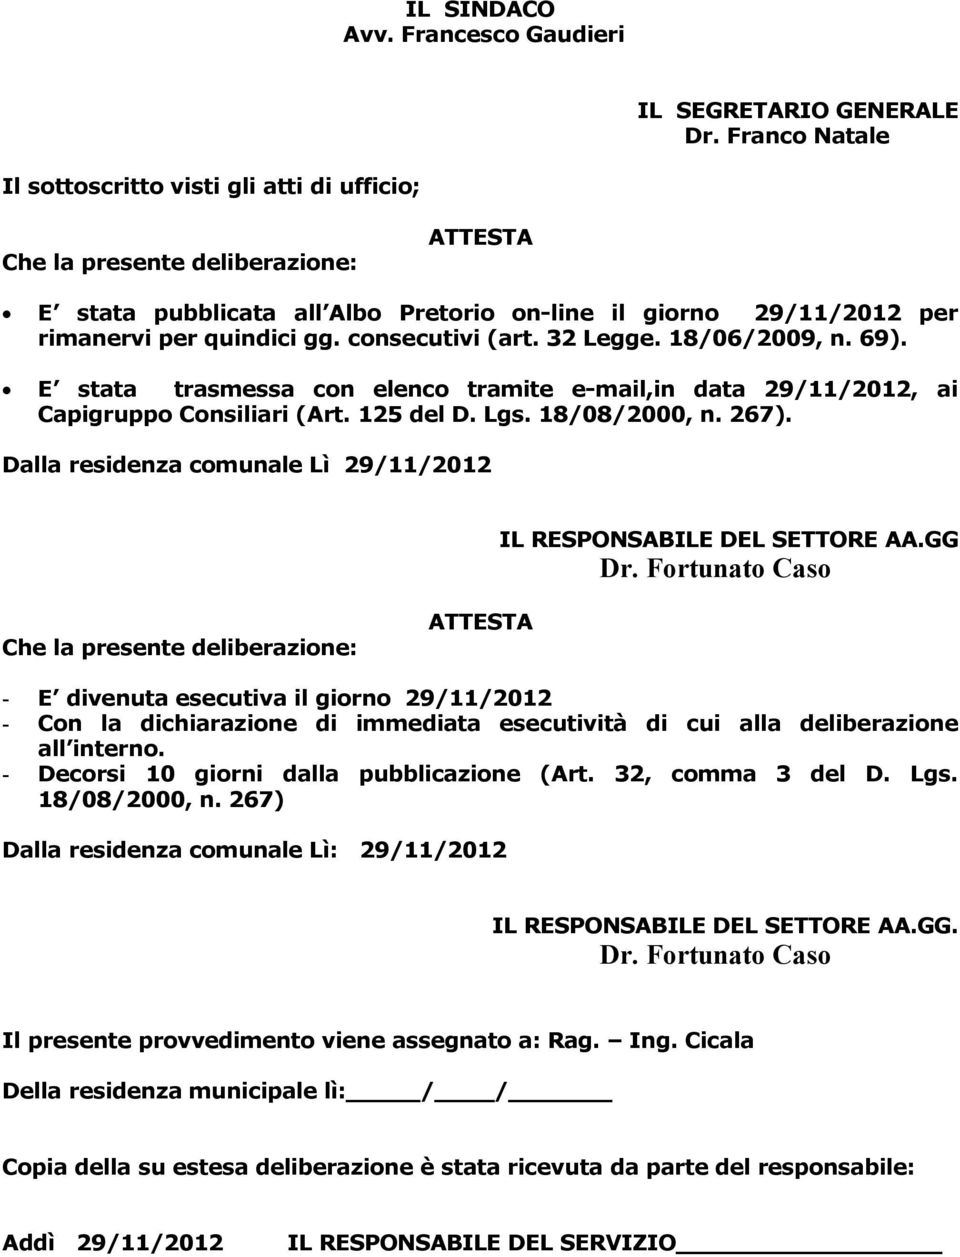 consecutivi (art. 32 Legge. 18/06/2009, n. 69). E stata trasmessa con elenco tramite e-mail,in data 29/11/2012, ai Capigruppo Consiliari (Art. 125 del D. Lgs. 18/08/2000, n. 267).